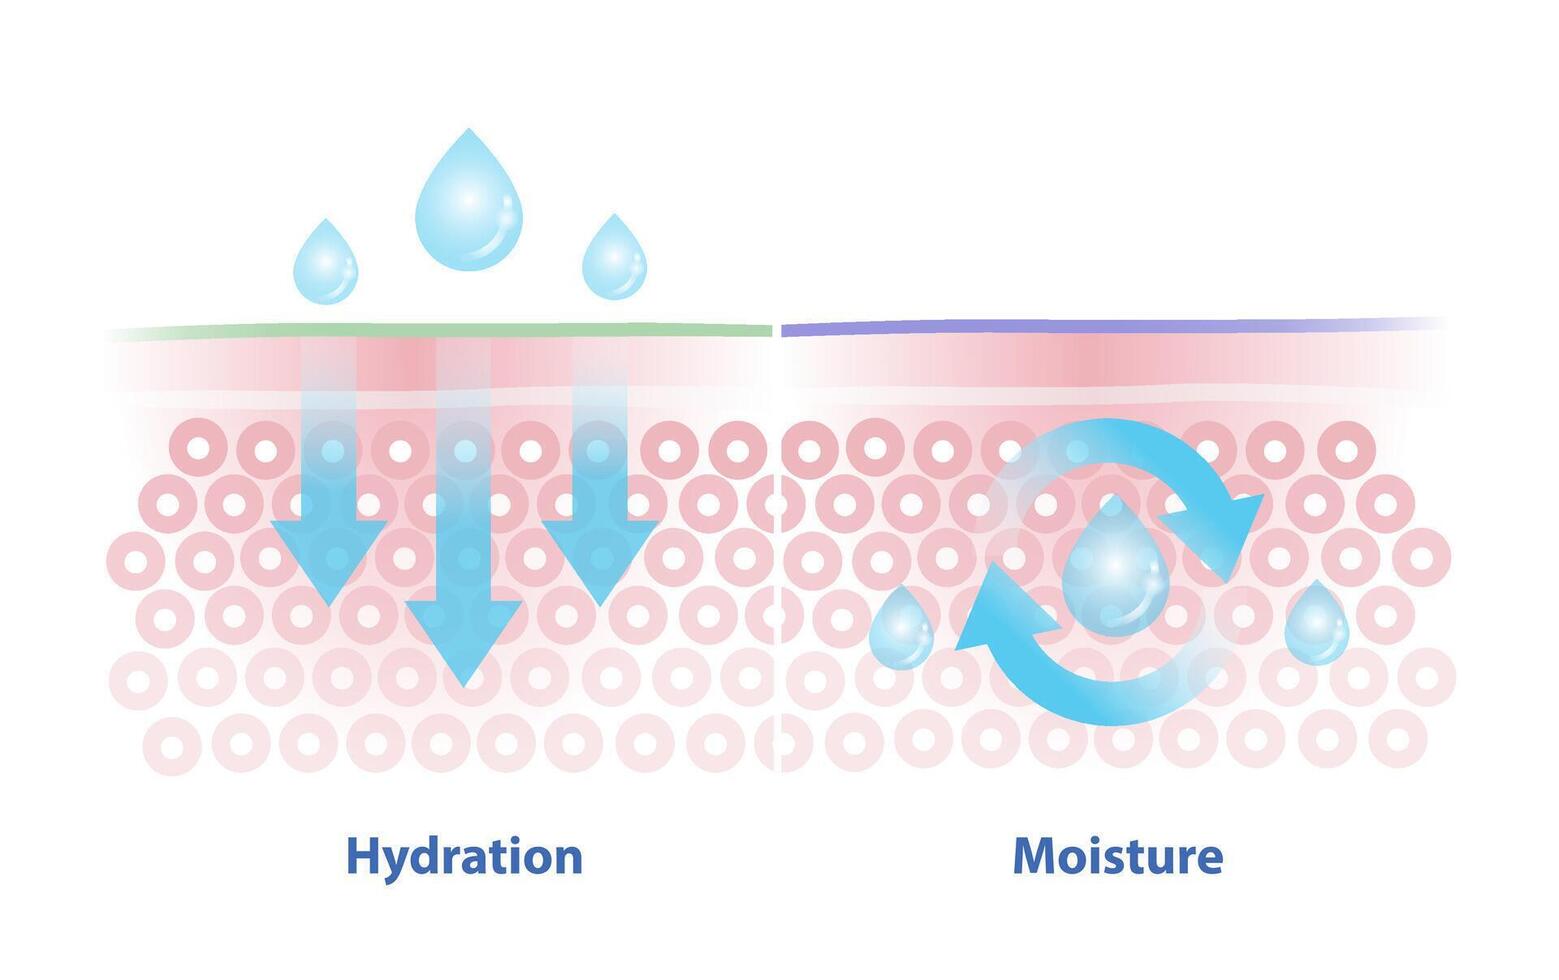 Comparaison de hydratation et humidité vecteur illustration. hydratation, processus de attirant et absorbant l'eau. humidité, création de une joint sur le peau à prévenir humidité de s'échapper.